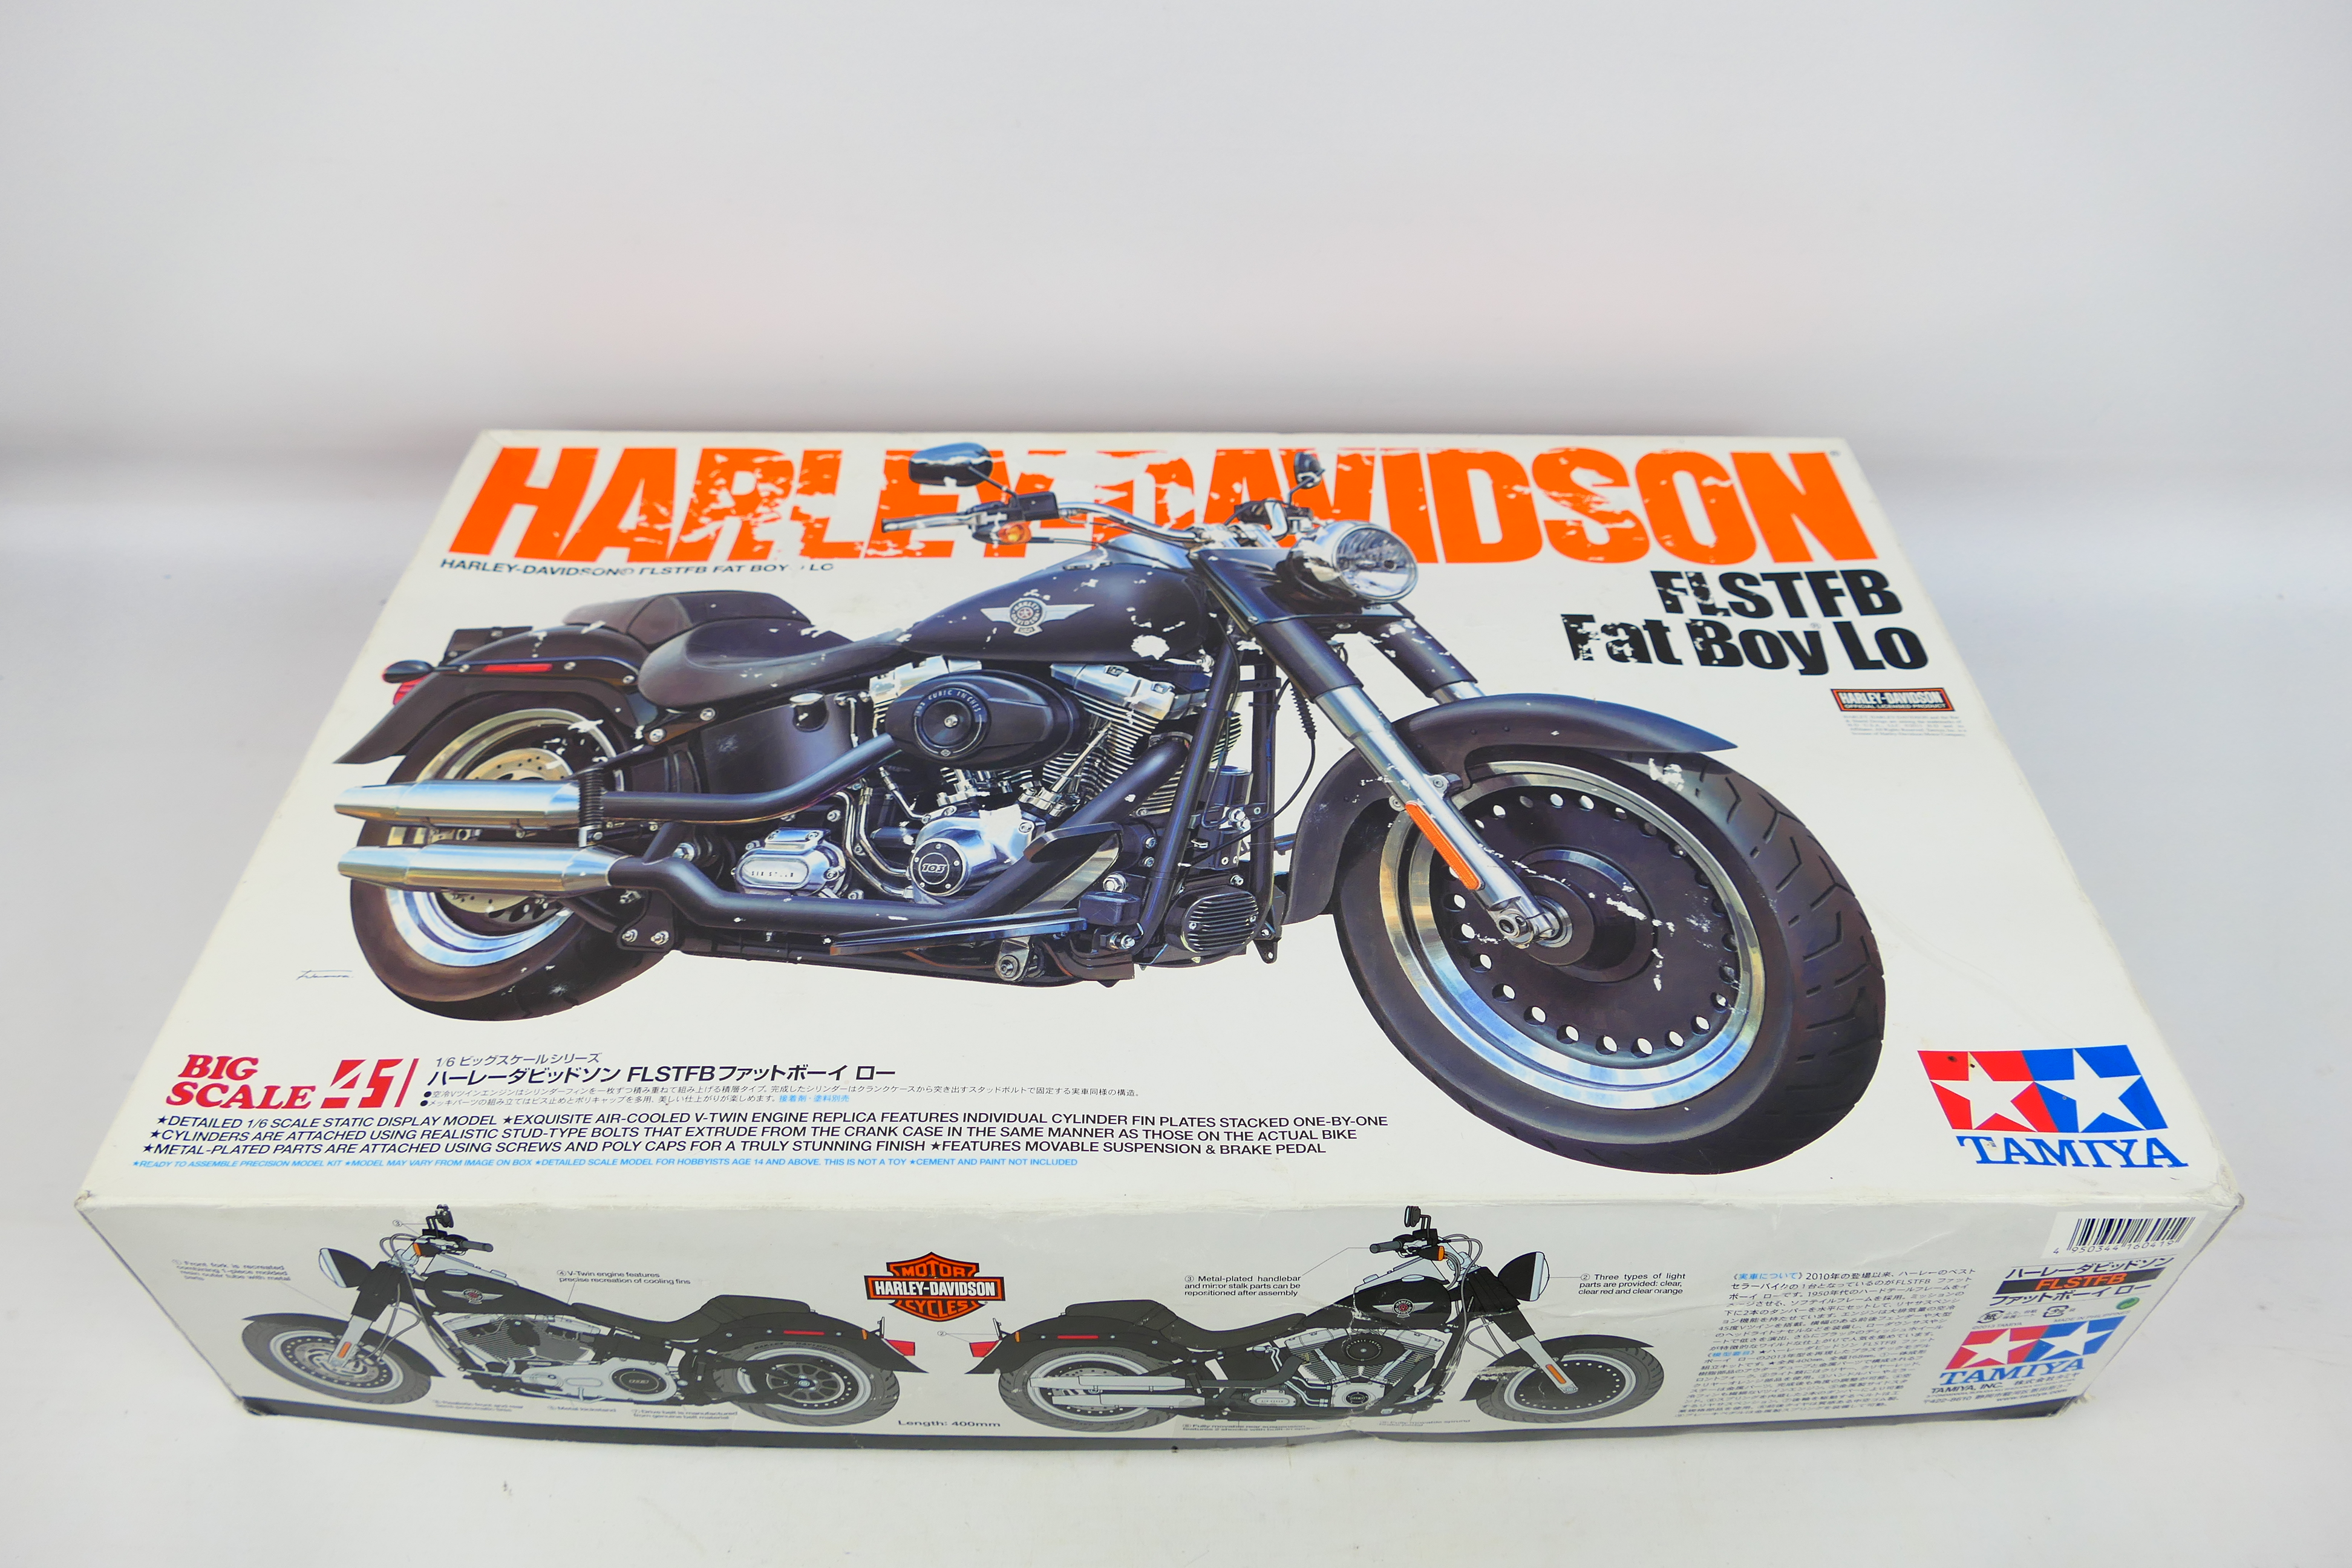 Tamiya - A 1:6 scale Harley Davidson FLSTFB Fat Boy Lo(16041).